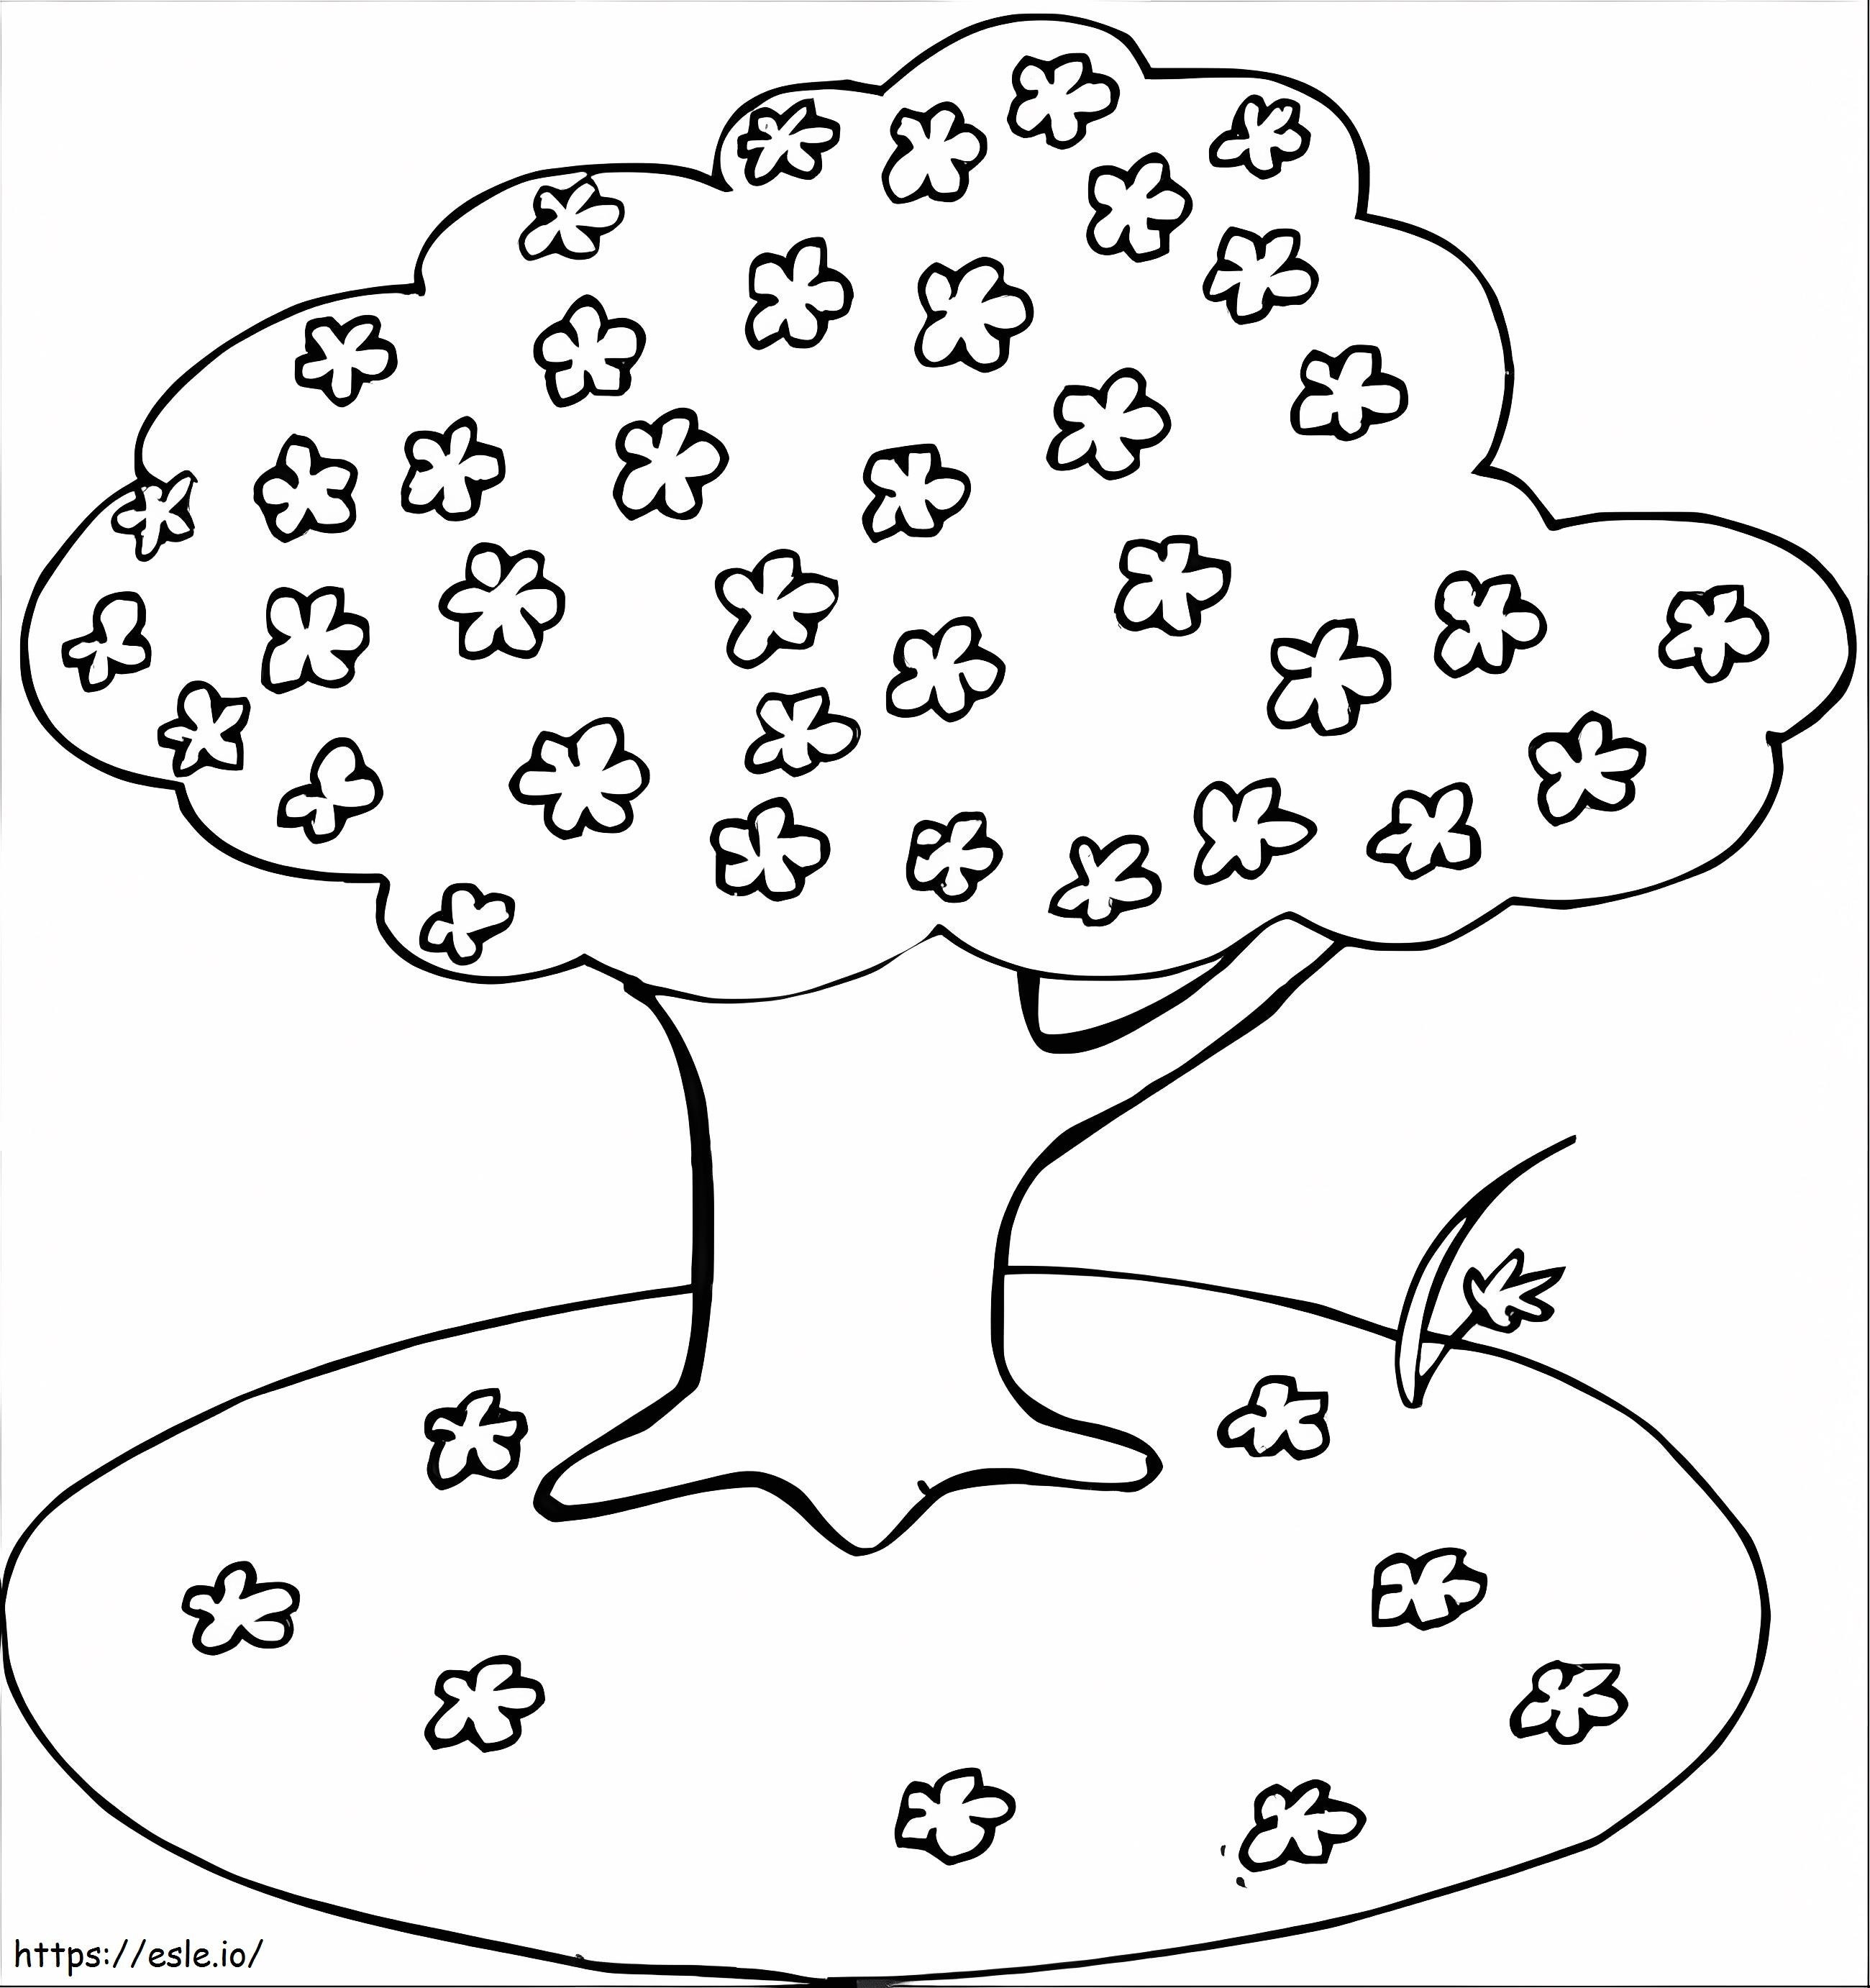 Kirschblütenbaum-Zeichnung ausmalbilder